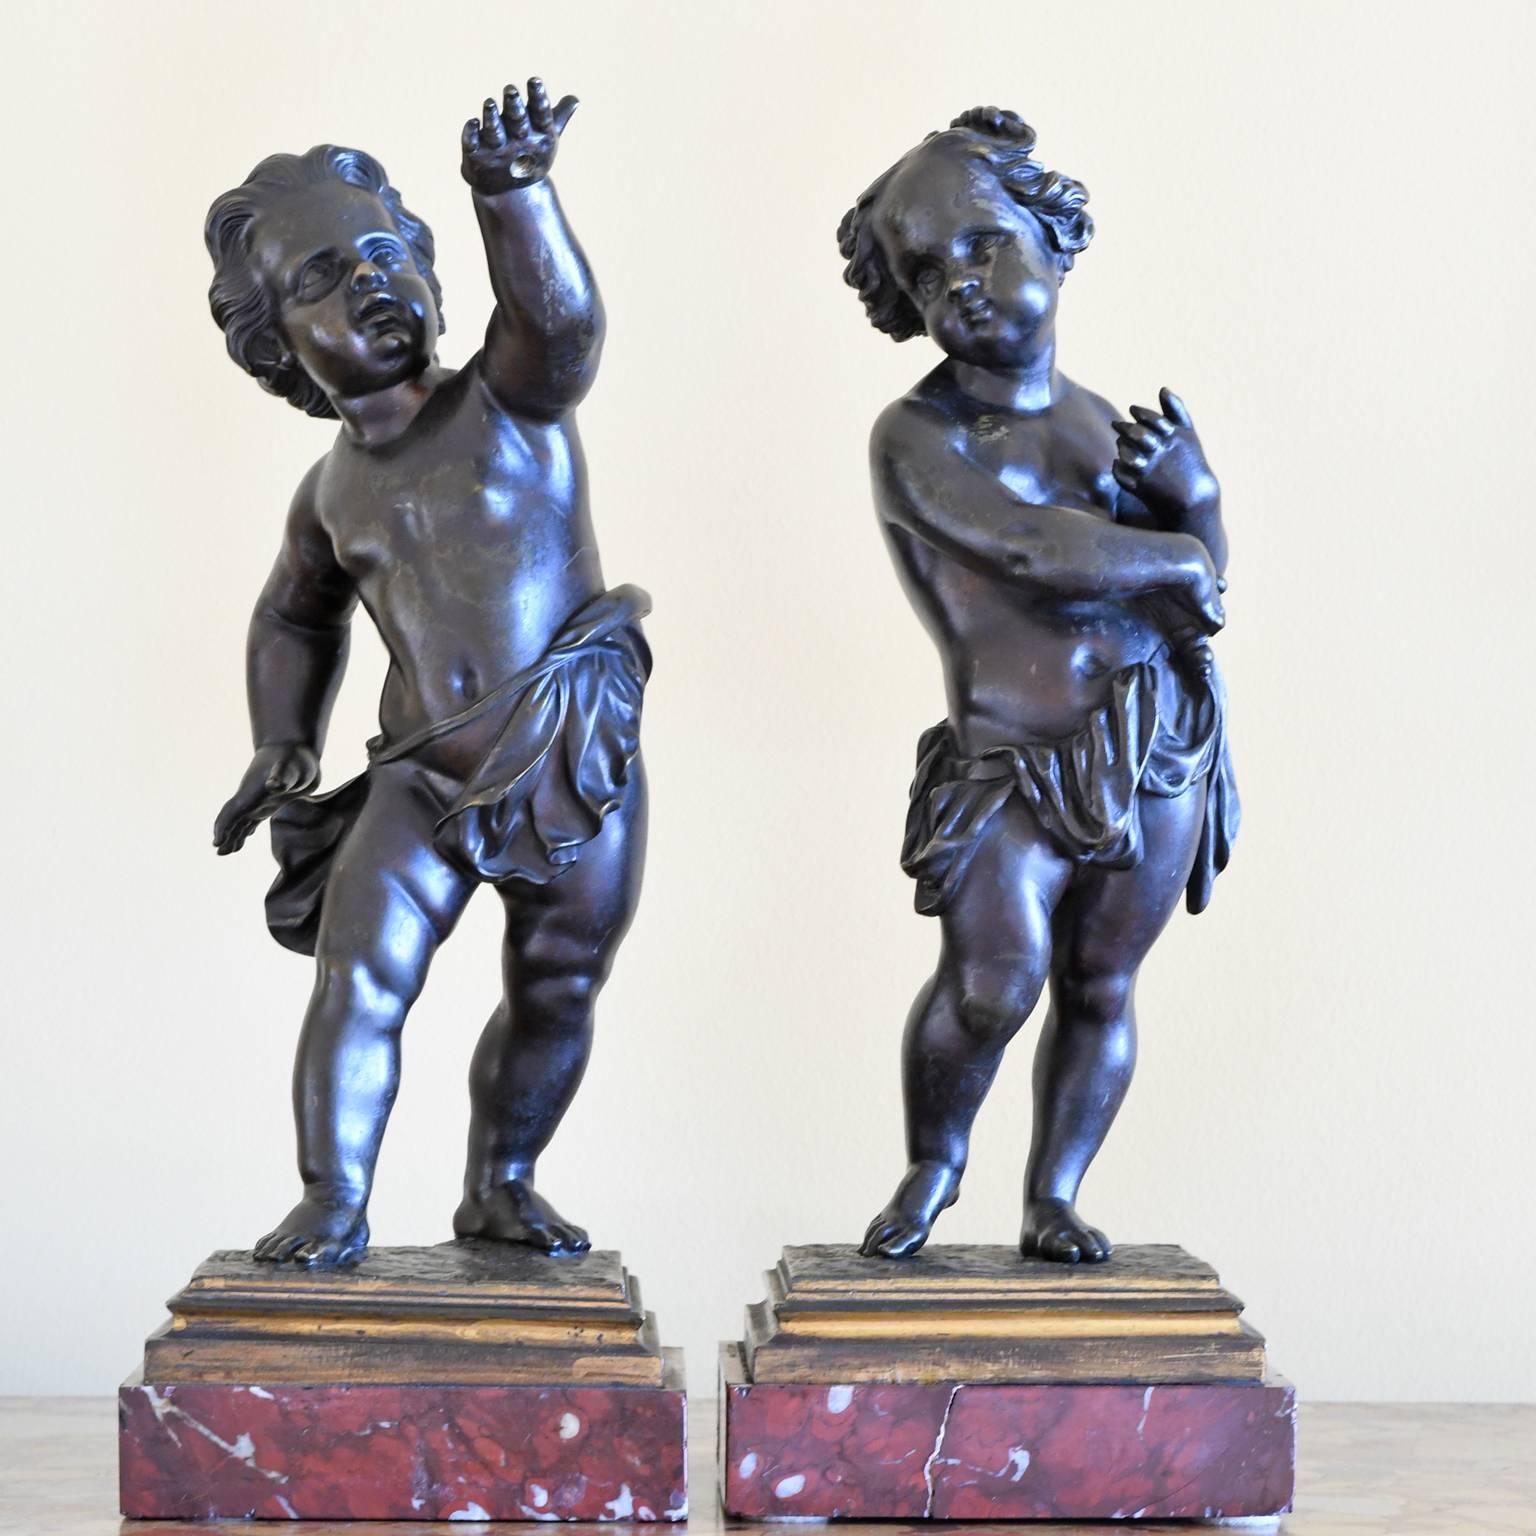 Paire d'angelots ou de putti en bronze moulé, debout à l'envers sur une base carrée en marbre rouge, France, vers la fin des années 1800.
Remarque : Ces charmantes figurines chérubines étaient probablement utilisées en combinaison avec des